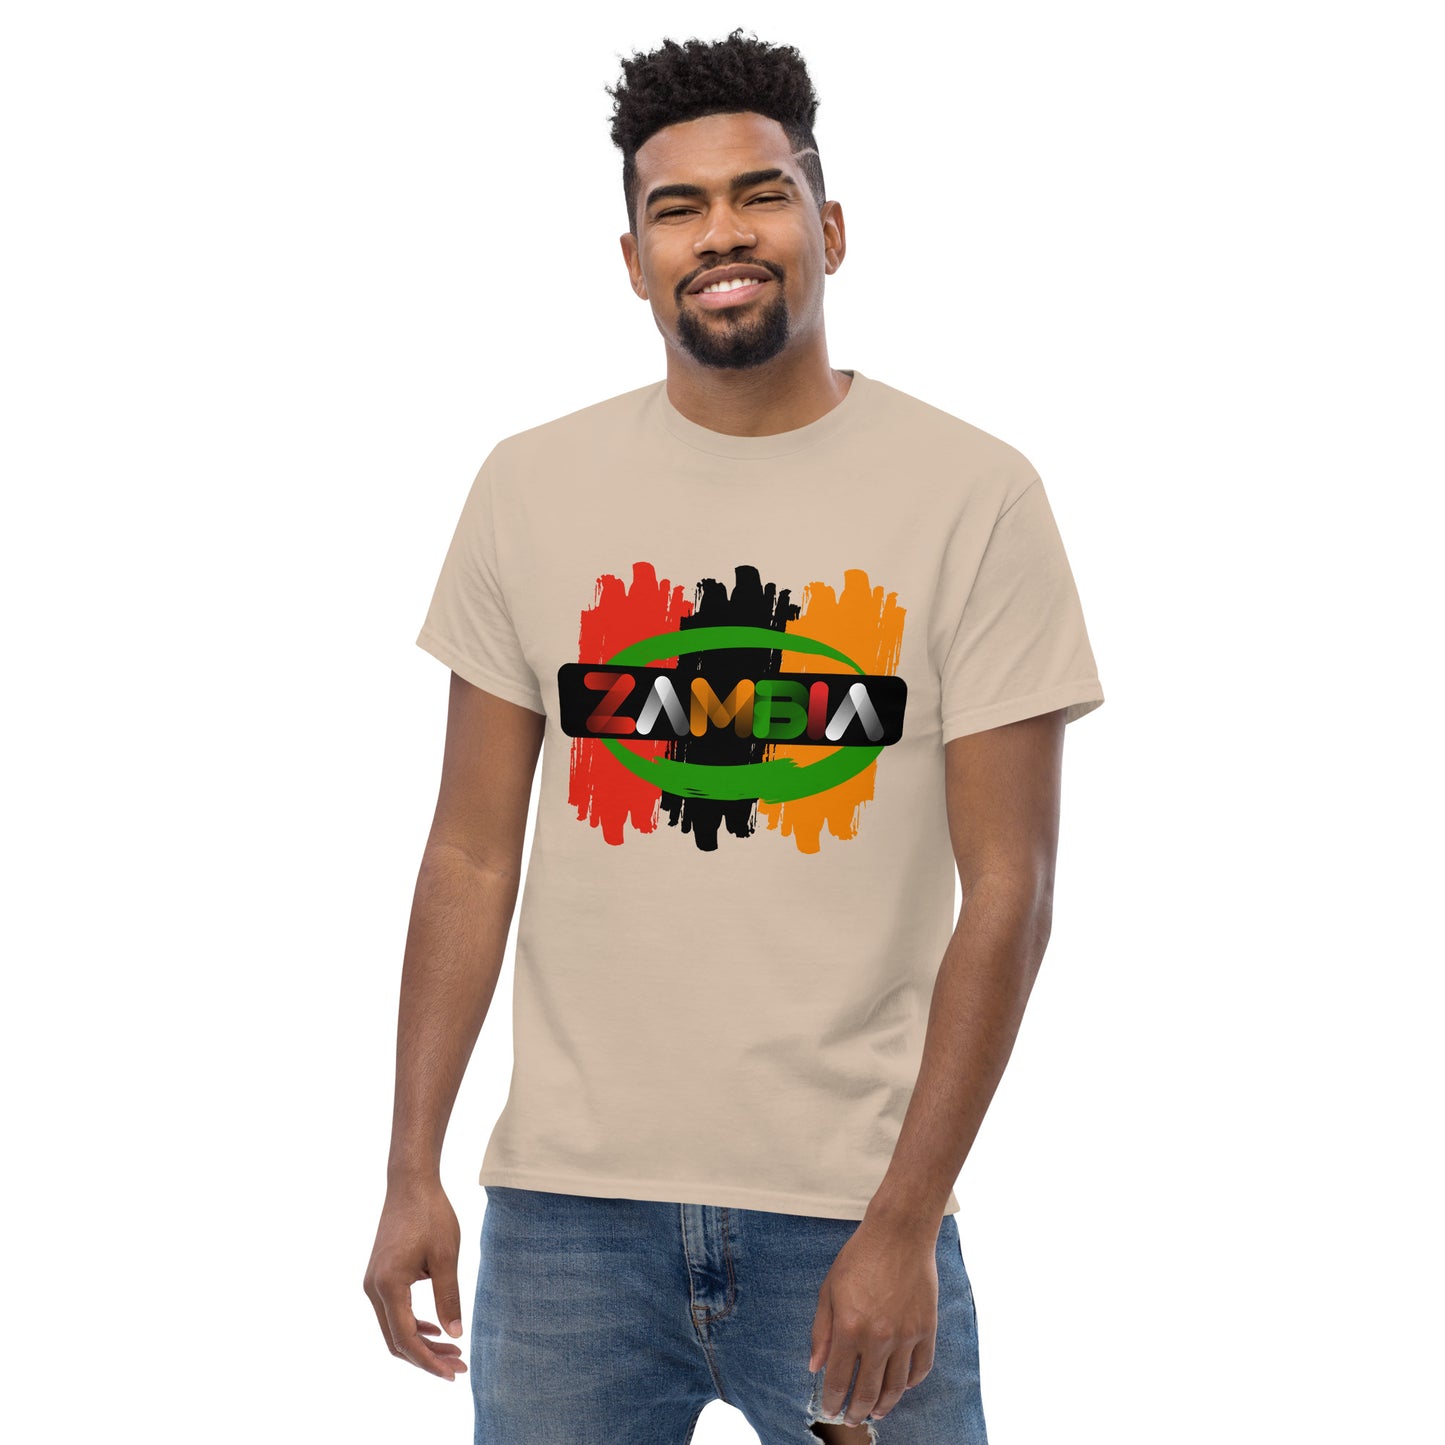 Men's Zambia classic t shirt